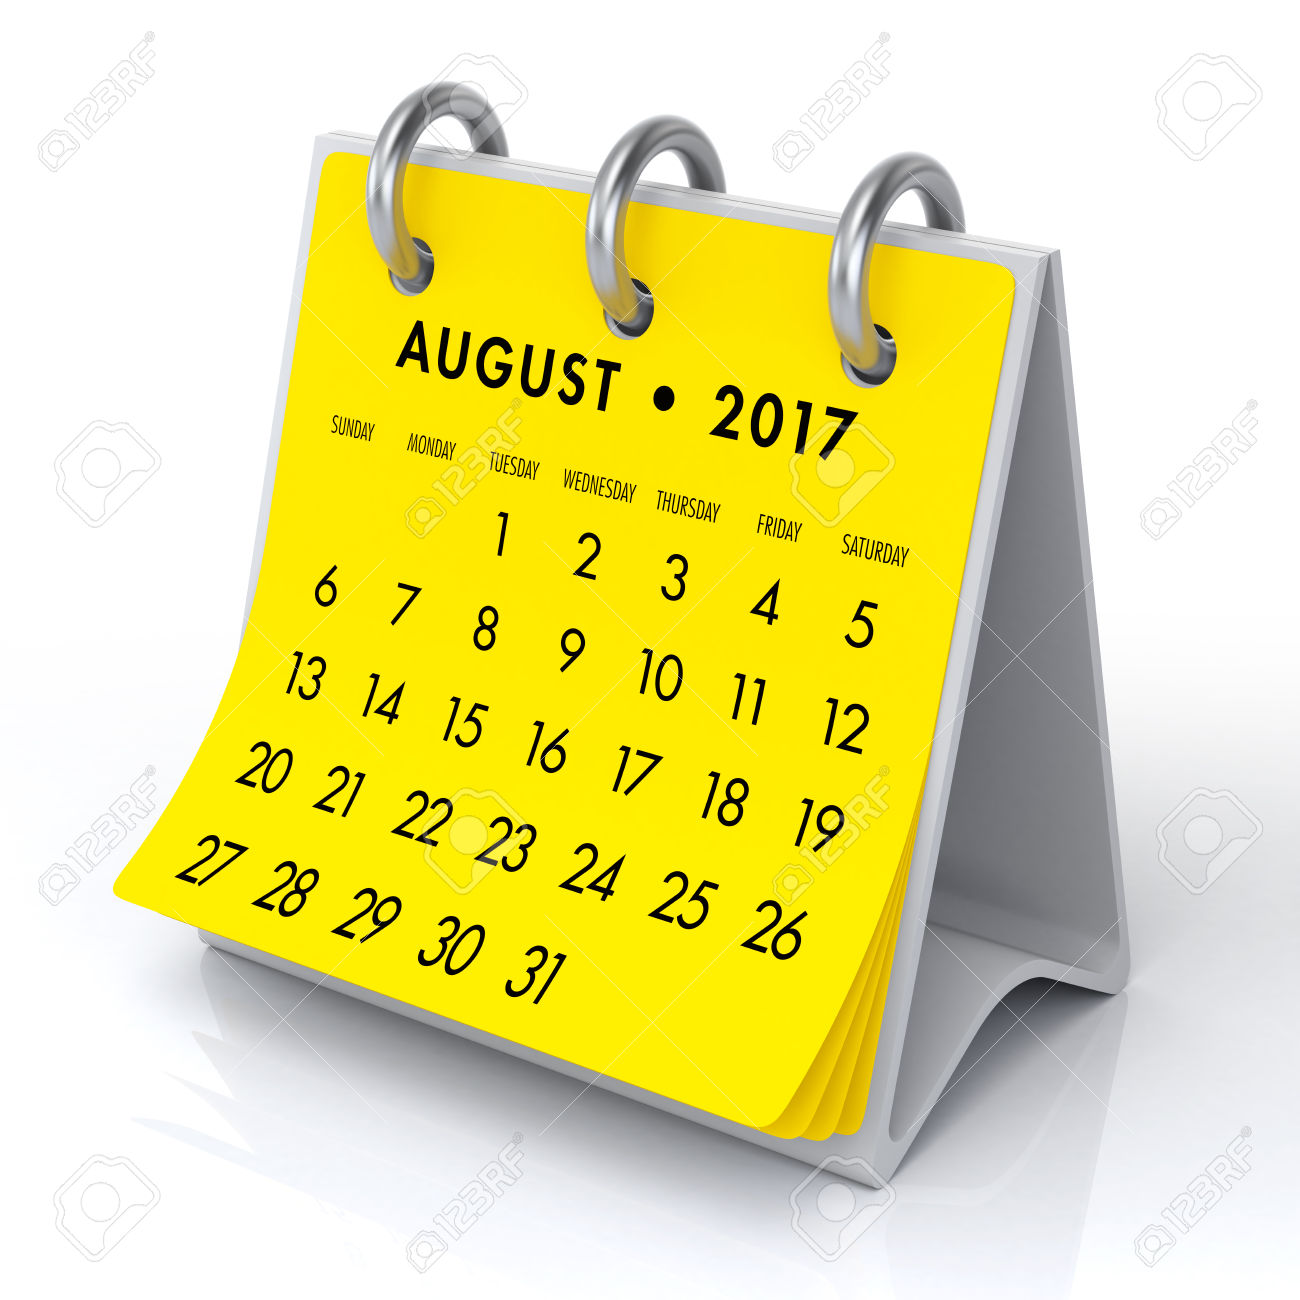 August clipart calendar.